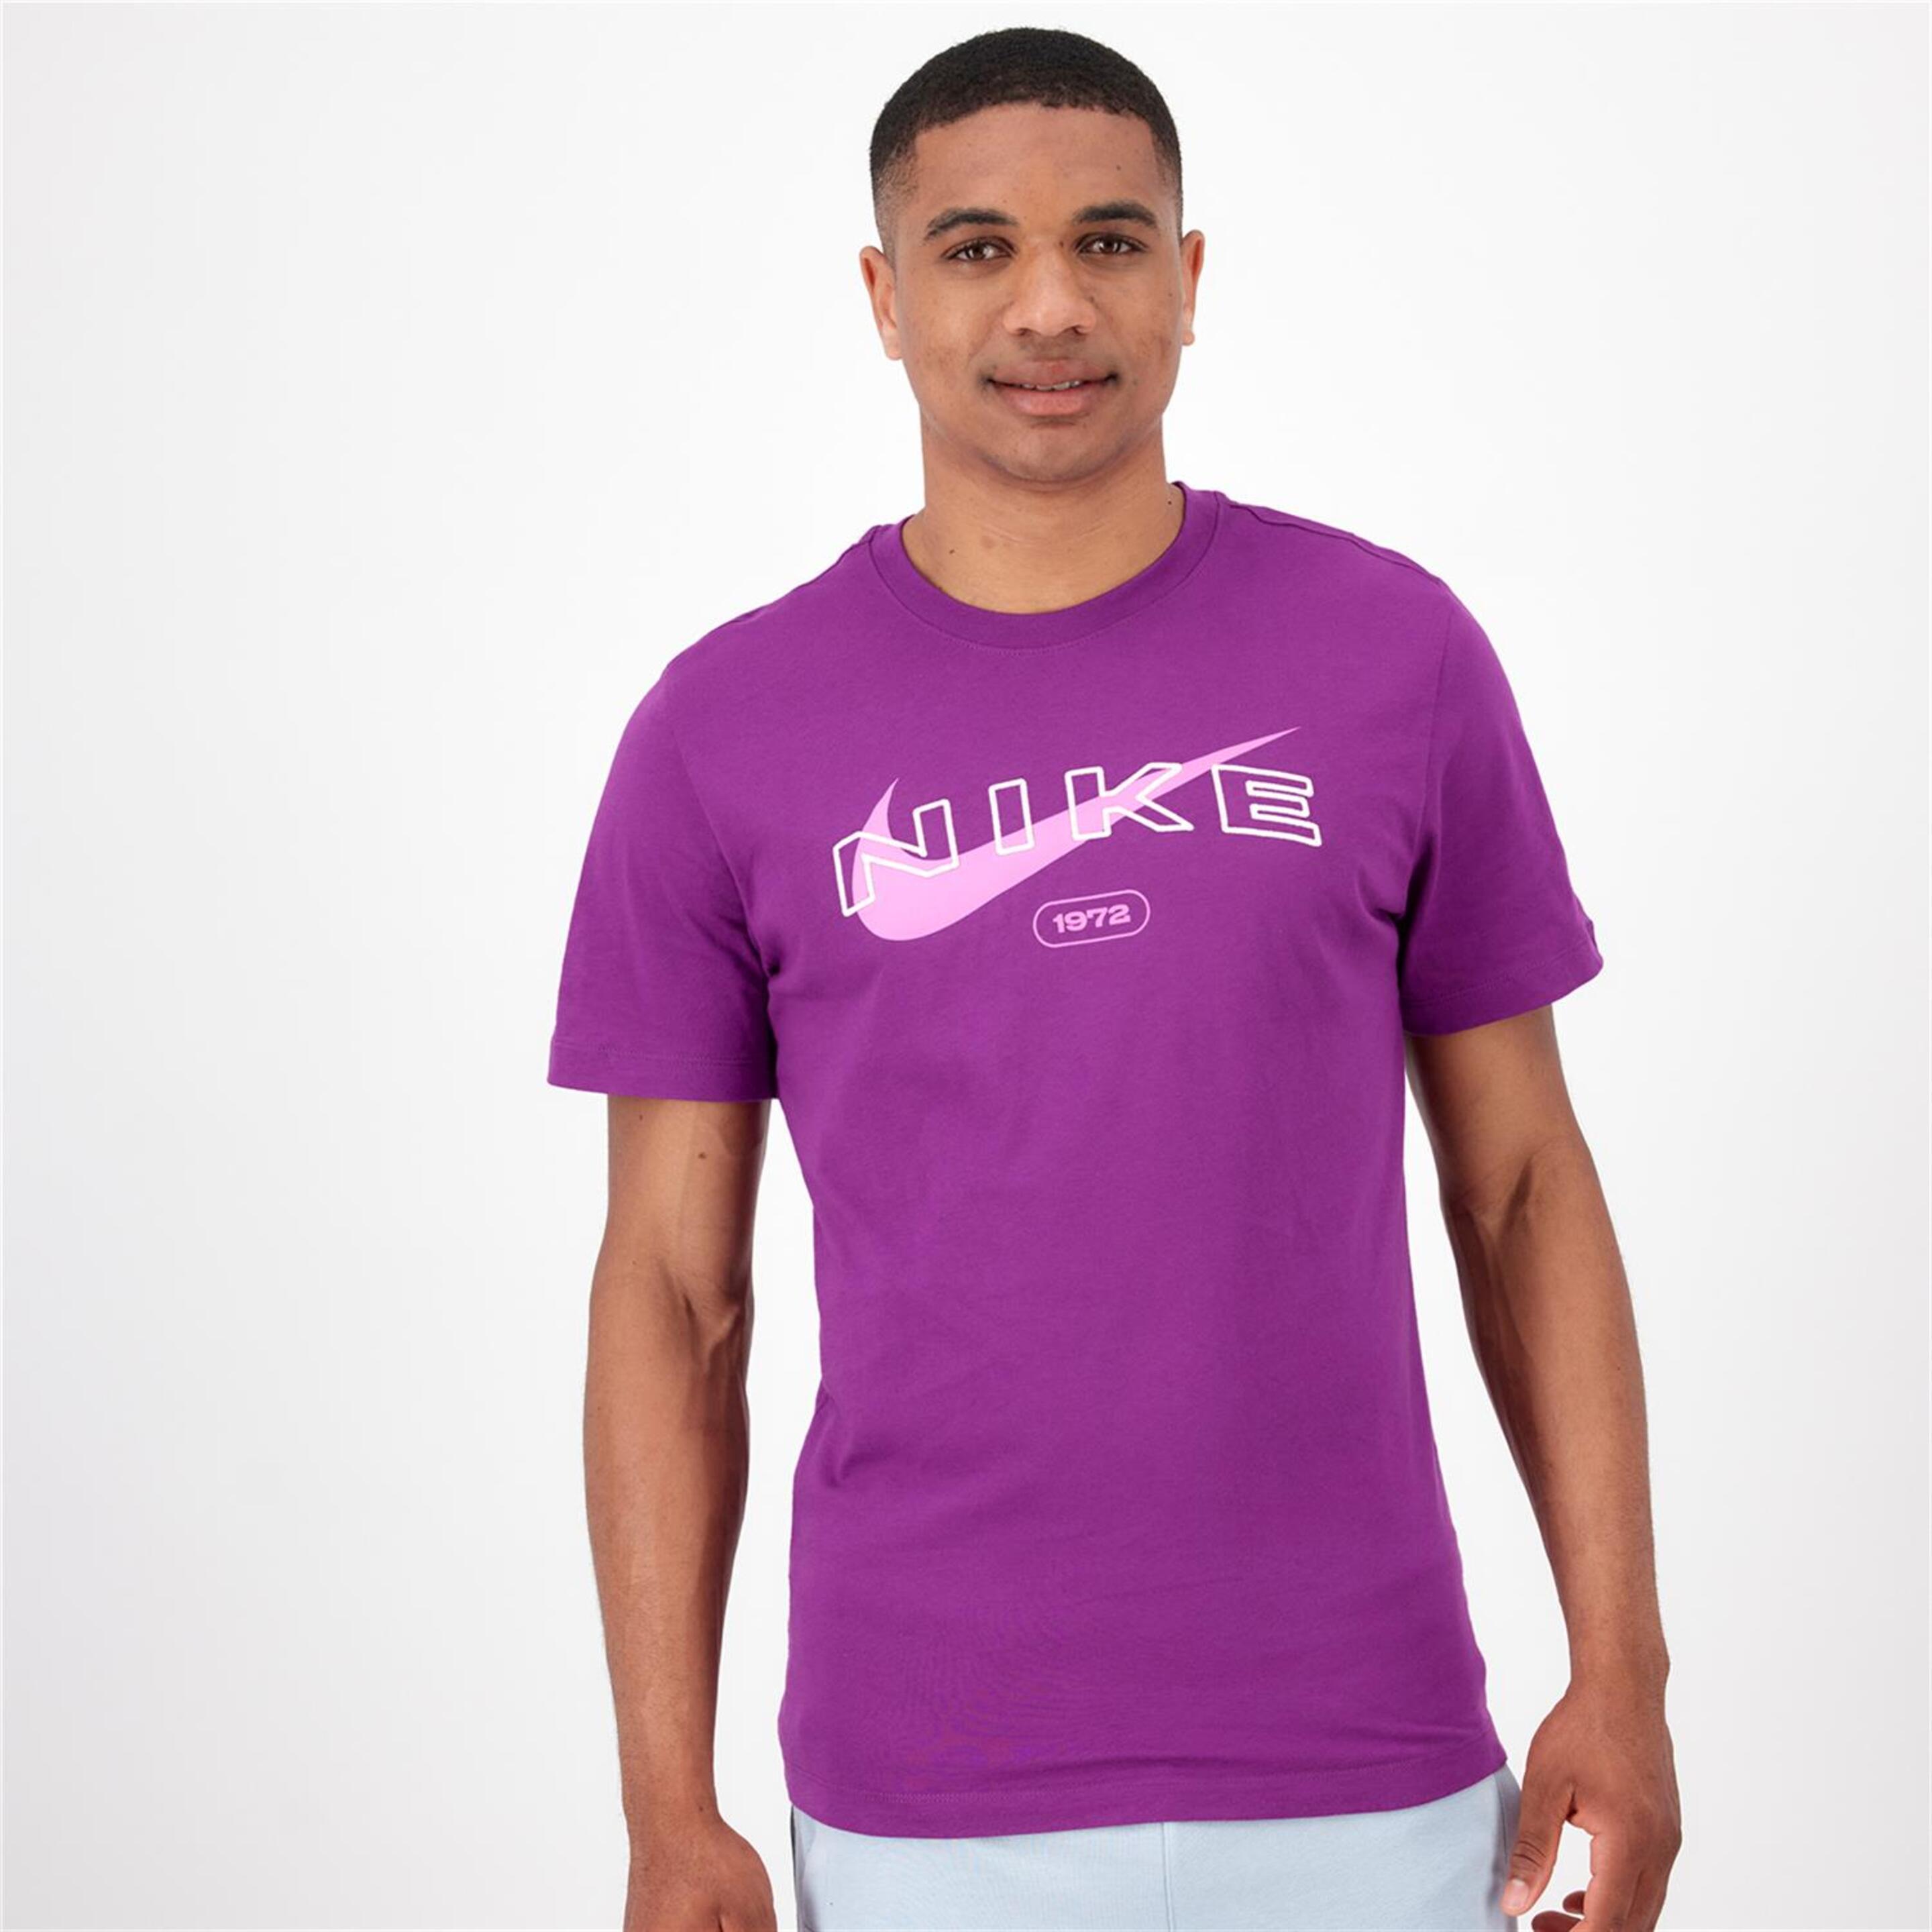 Nike Hbr - morado - Camiseta Hombre